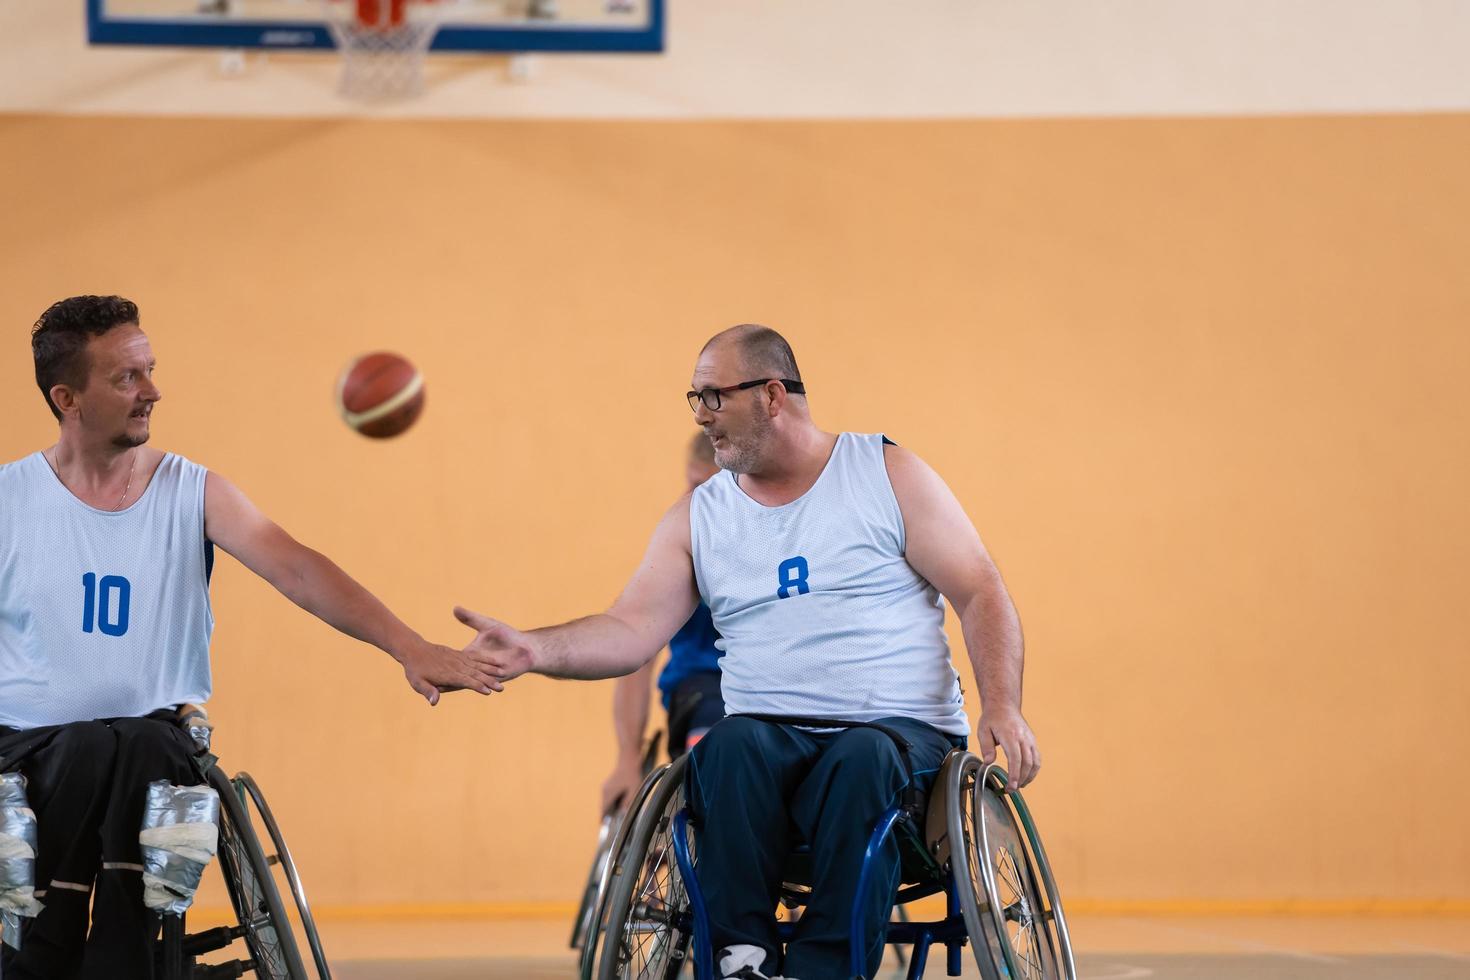 une équipe d'anciens combattants en fauteuil roulant jouant au basketball, célébrant les points gagnés dans un match. concept de high five photo